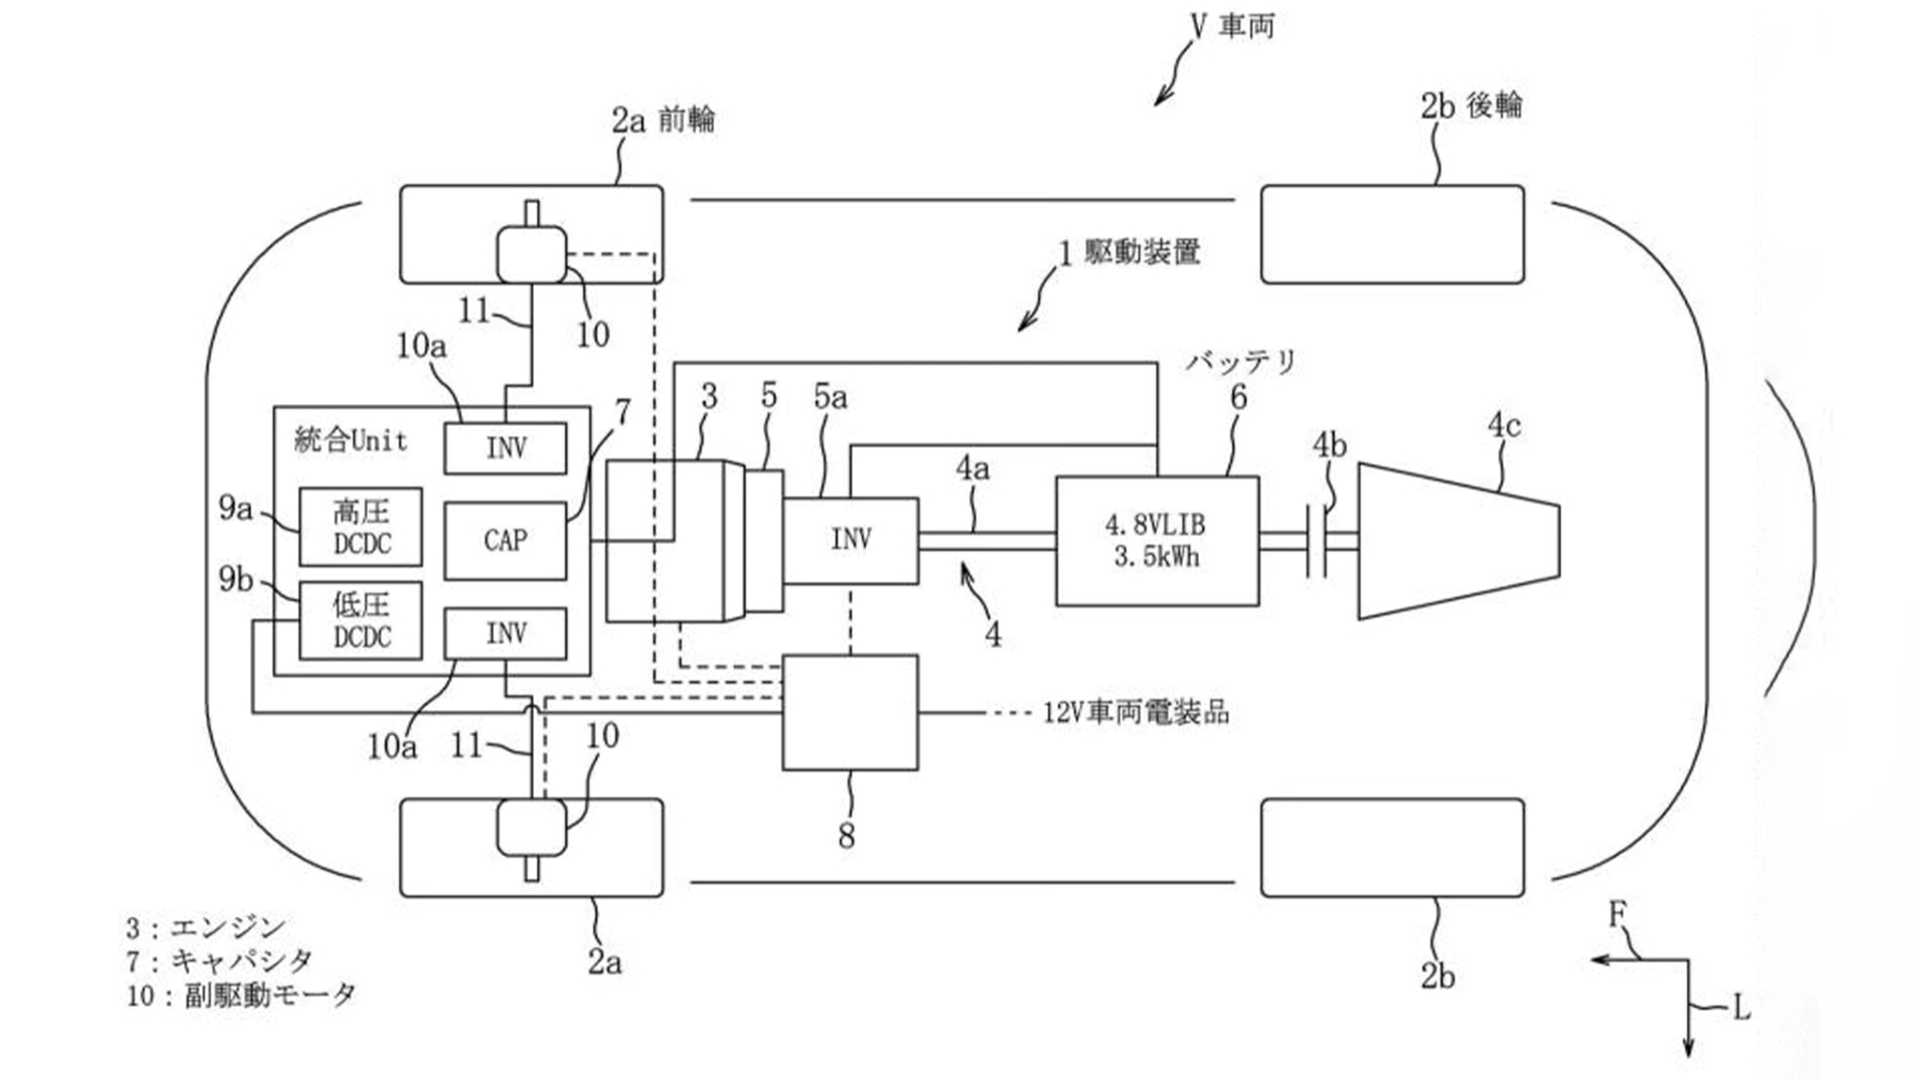 patente Mazda hibrido motor rotativo bateria supercondensador